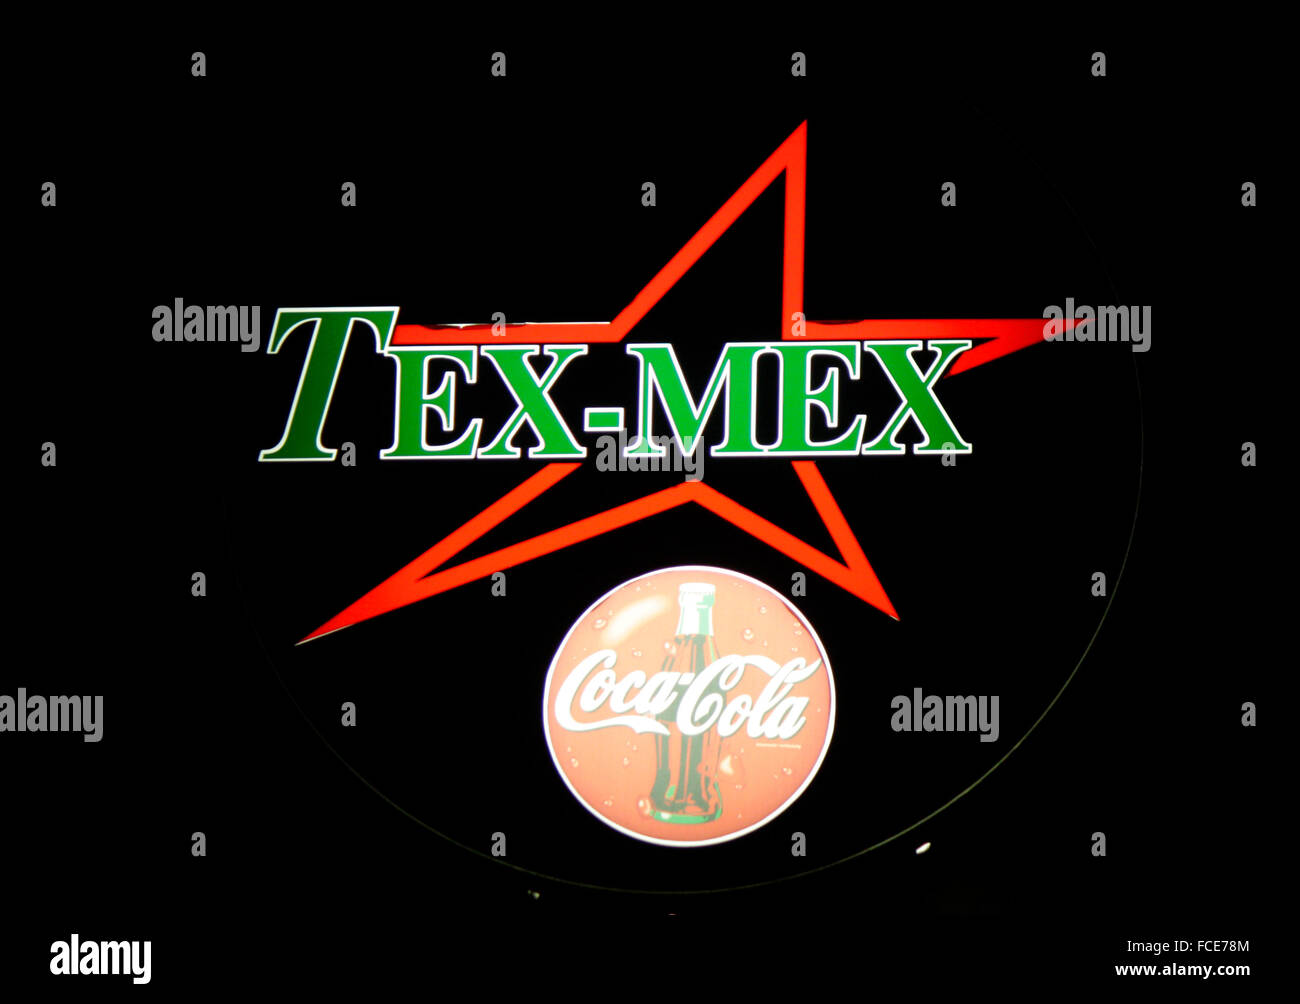 Markenname: "Tex Mex", "Coca Cola", Berlin. Stockfoto